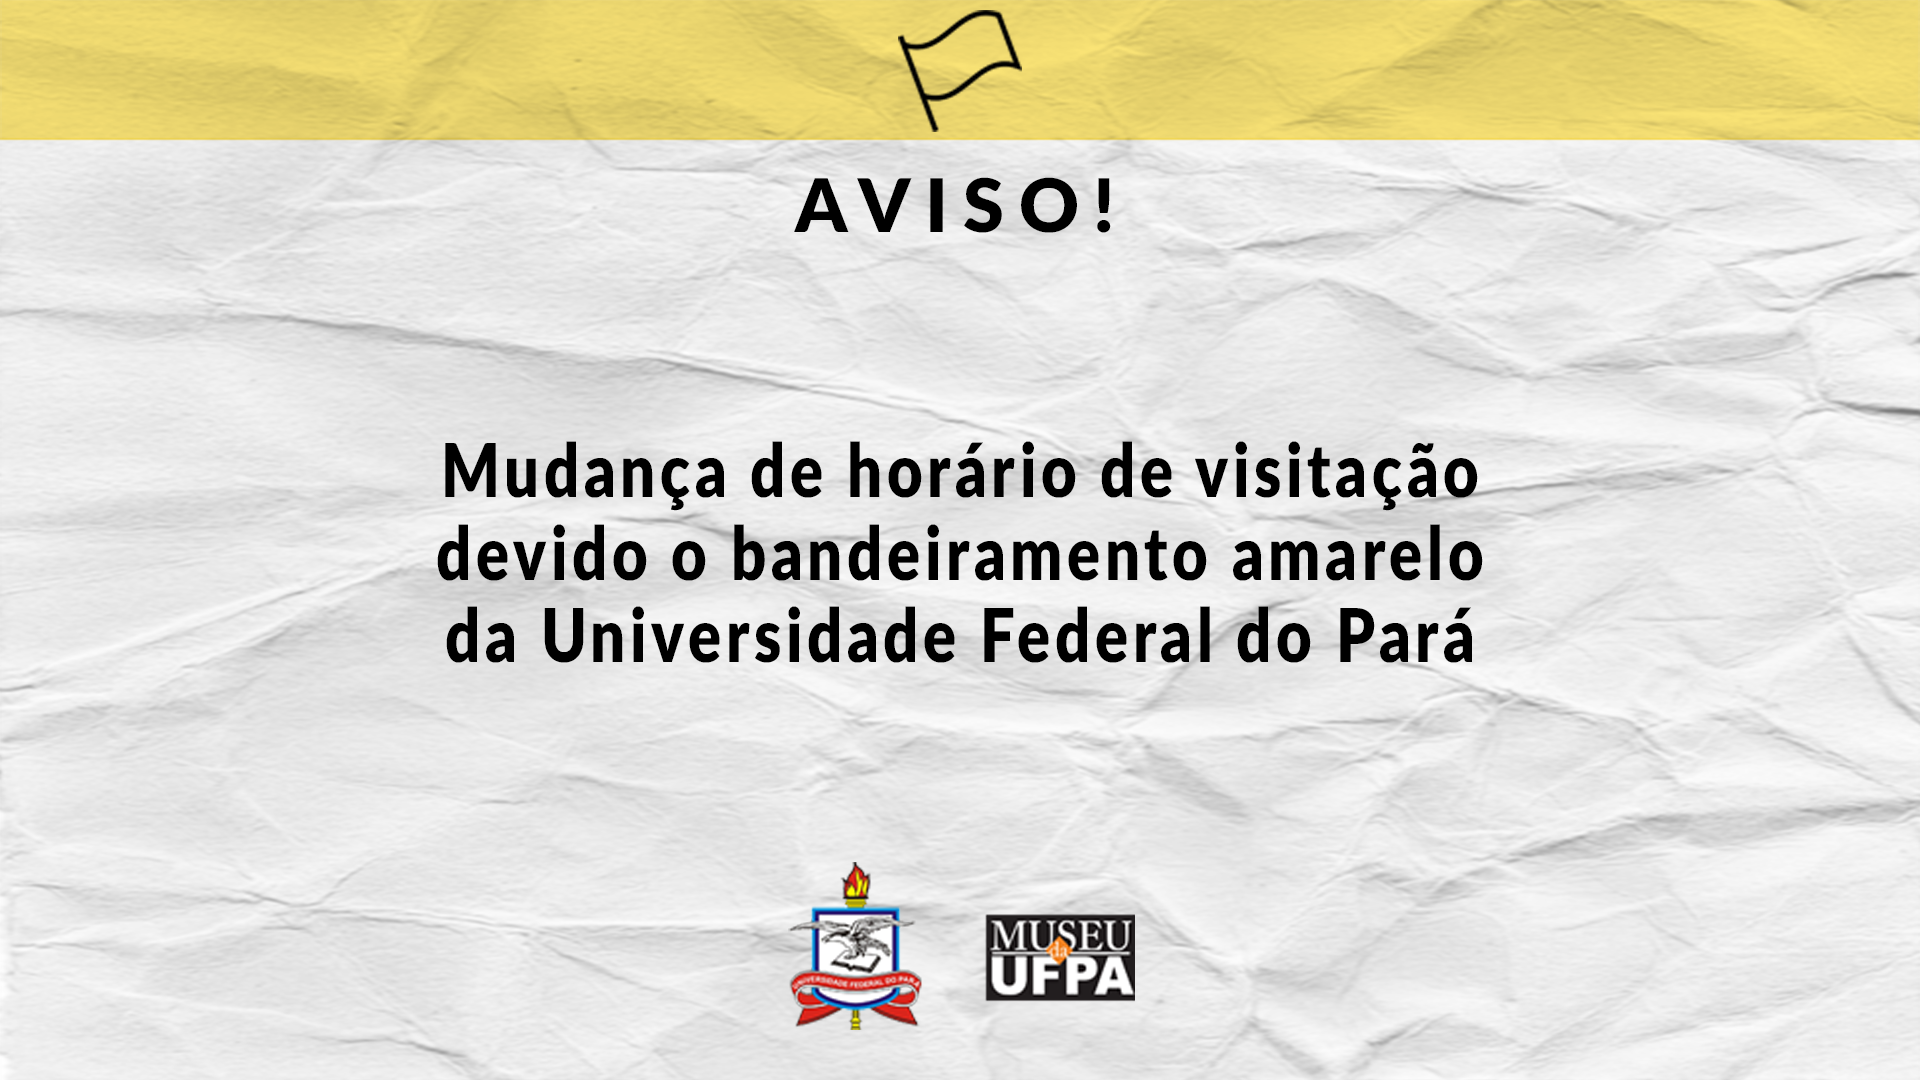 Mudança de horário de visitação devido o bandeiramento amarelo da Universidade Federal do Pará